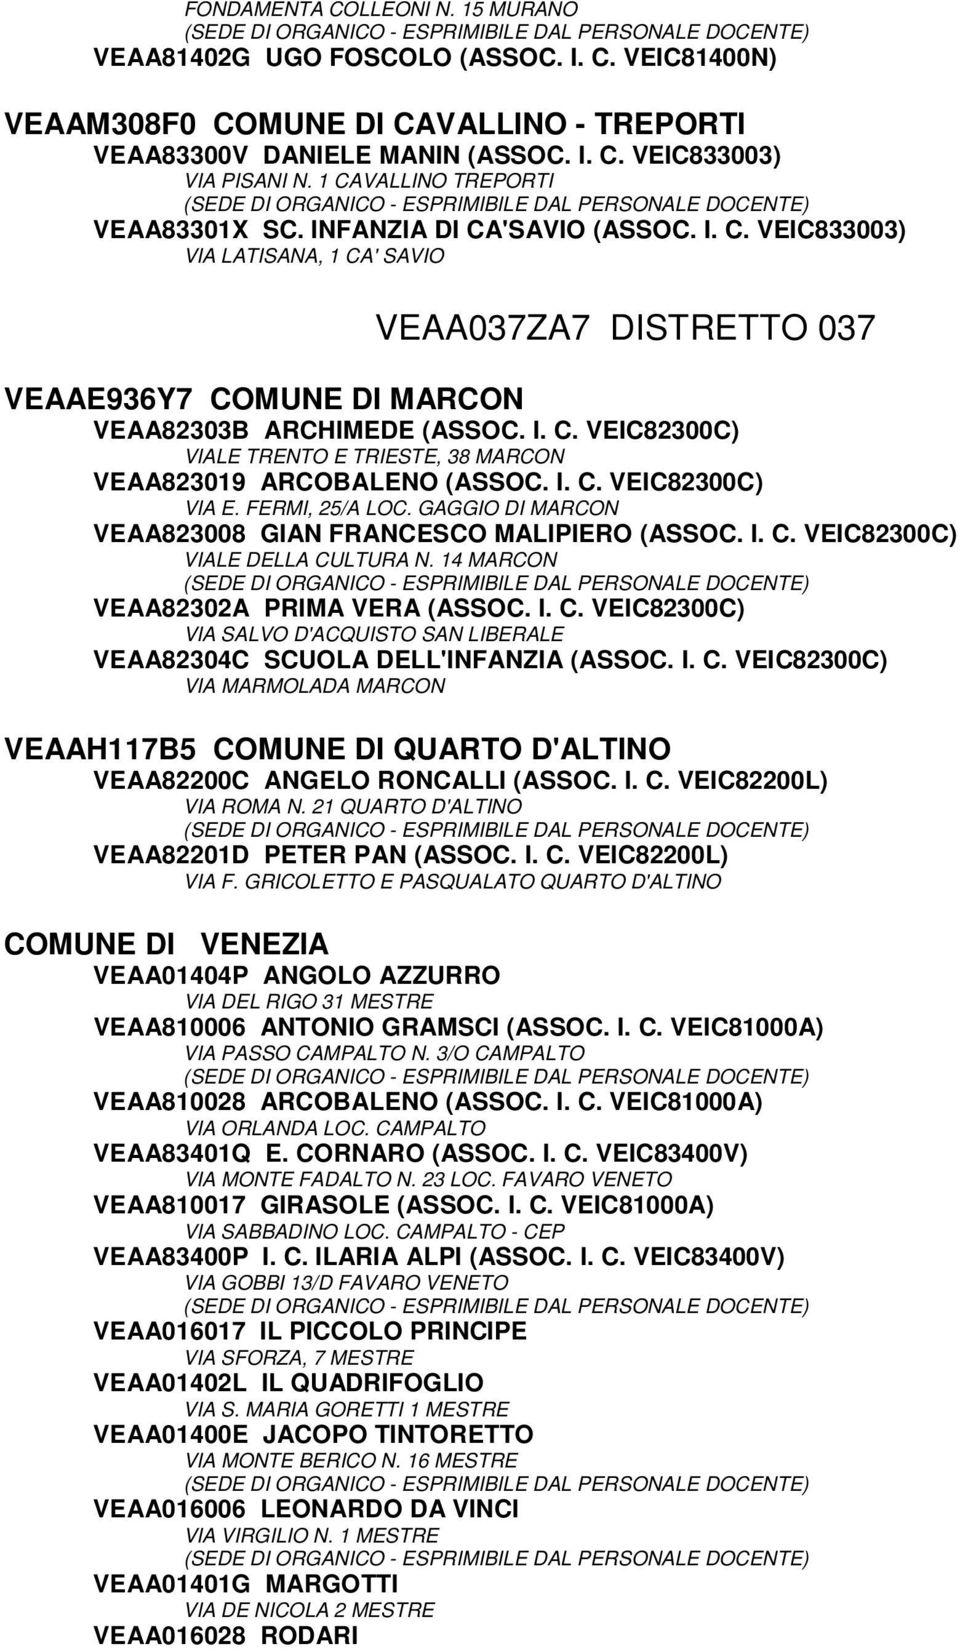 I. C. VEIC82300C) VIA E. FERMI, 25/A LOC. GAGGIO DI MARCON VEAA823008 GIAN FRANCESCO MALIPIERO (ASSOC. I. C. VEIC82300C) VIALE DELLA CULTURA N. 14 MARCON VEAA82302A PRIMA VERA (ASSOC. I. C. VEIC82300C) VIA SALVO D'ACQUISTO SAN LIBERALE VEAA82304C SCUOLA DELL'INFANZIA (ASSOC.